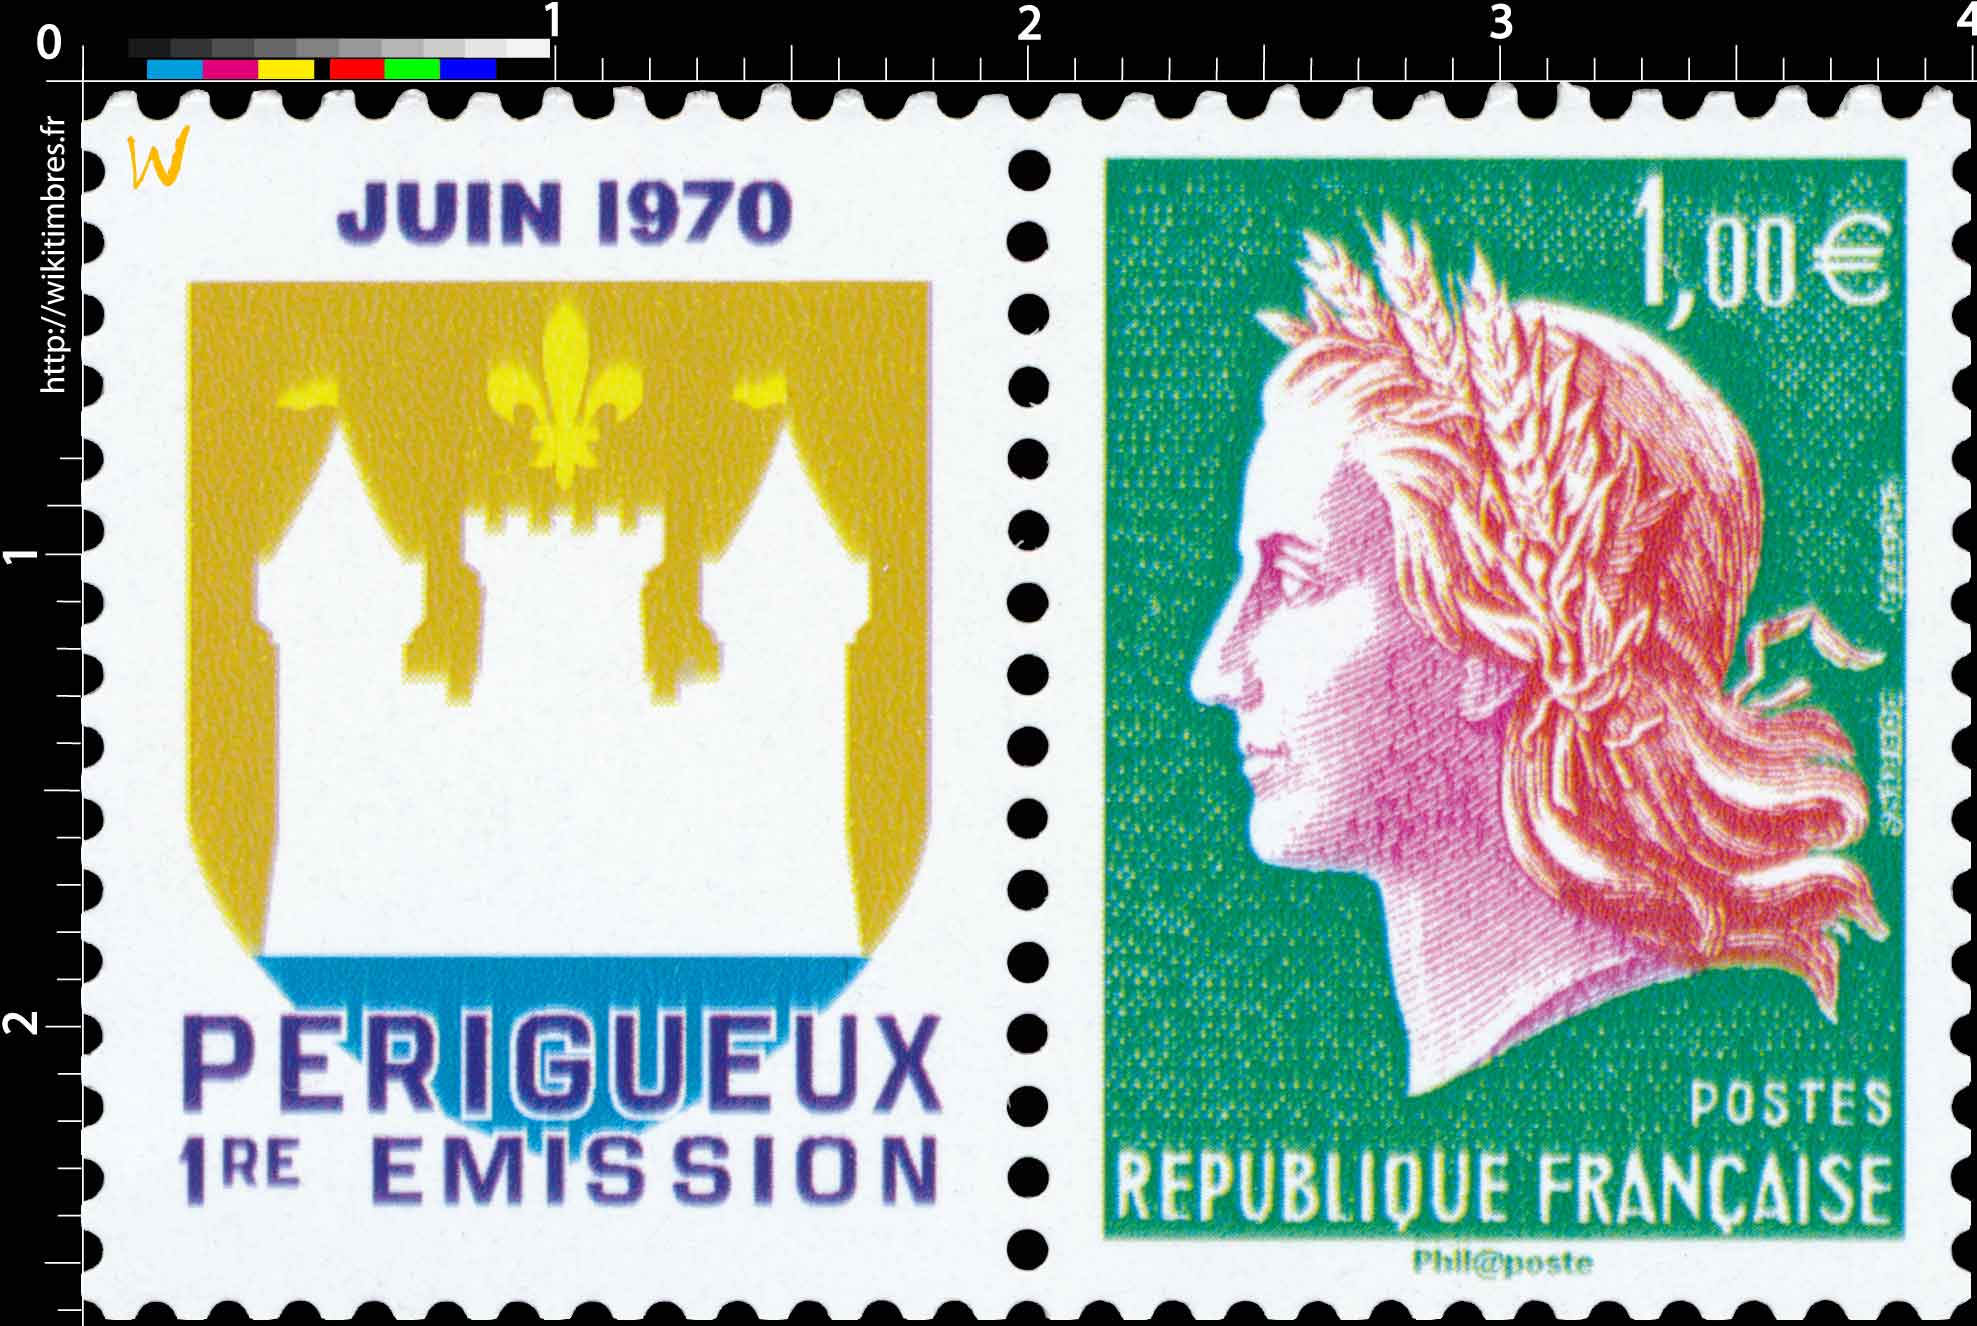 PÉRIGUEUX 1re ÉMISSION JUIN 1970